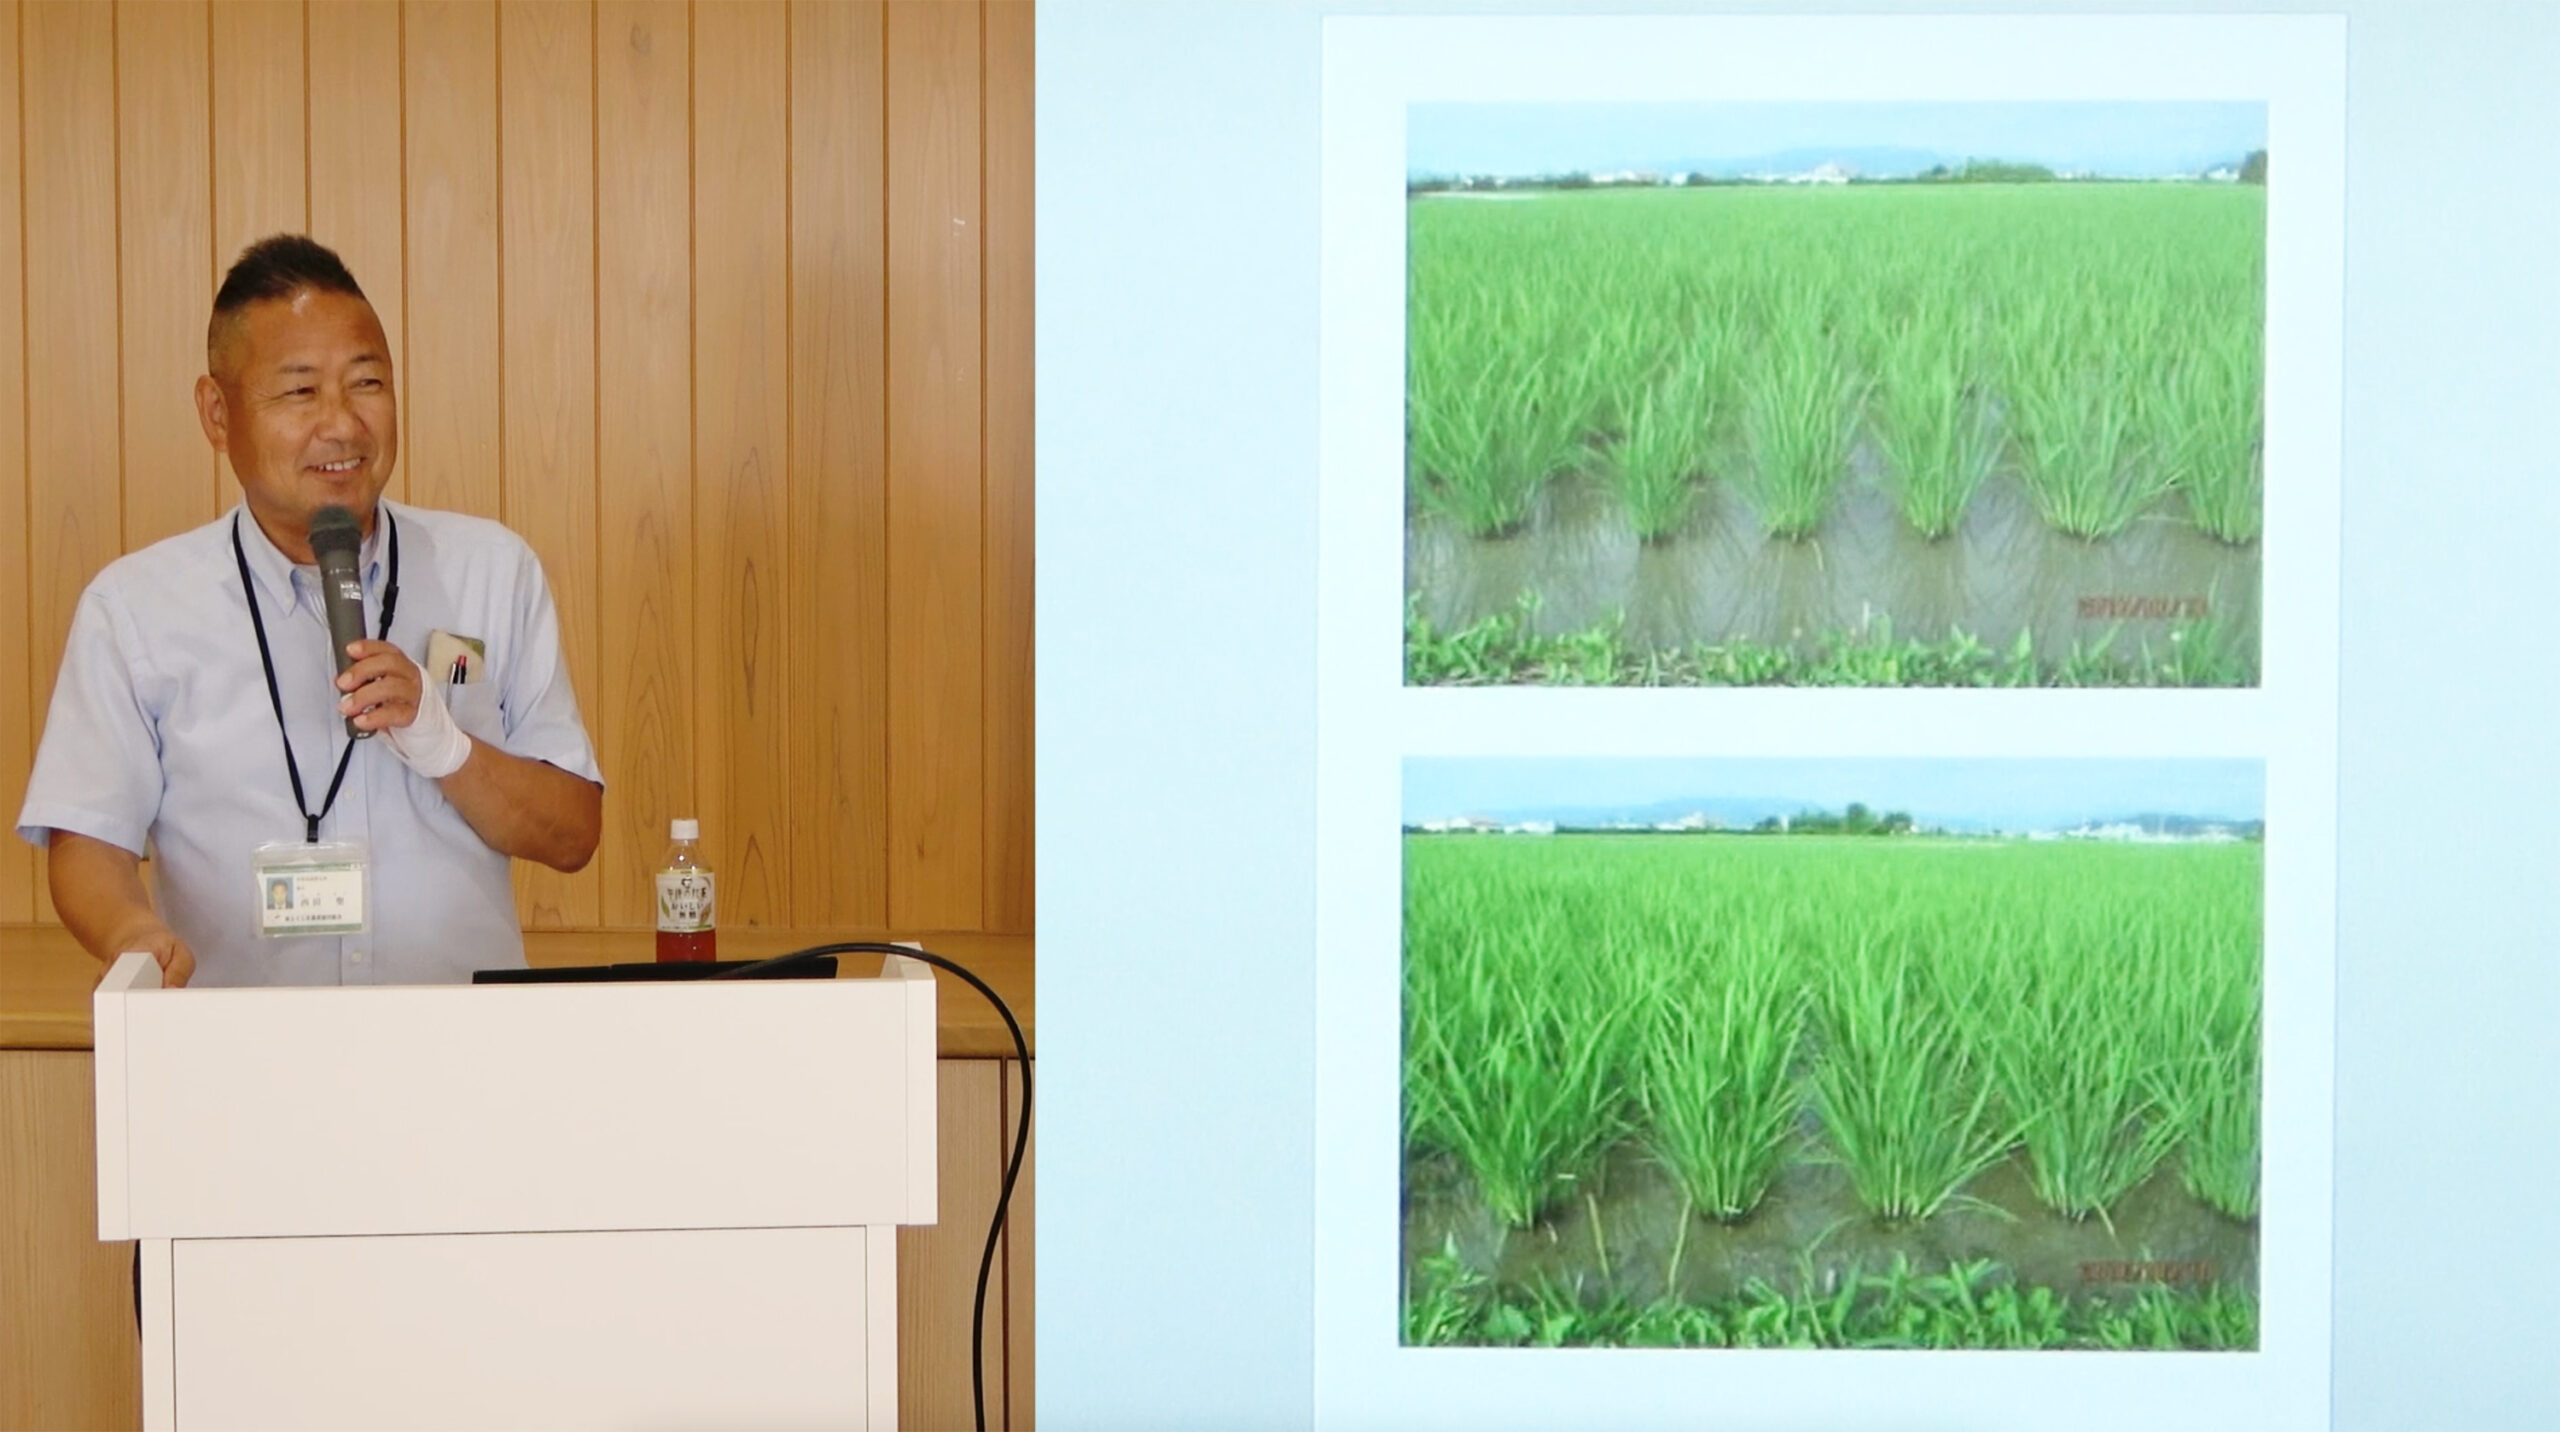 9月4日「BLOF勉強会【生態系の調和を保つ米づくりを目指して】」第2回目を実施しました